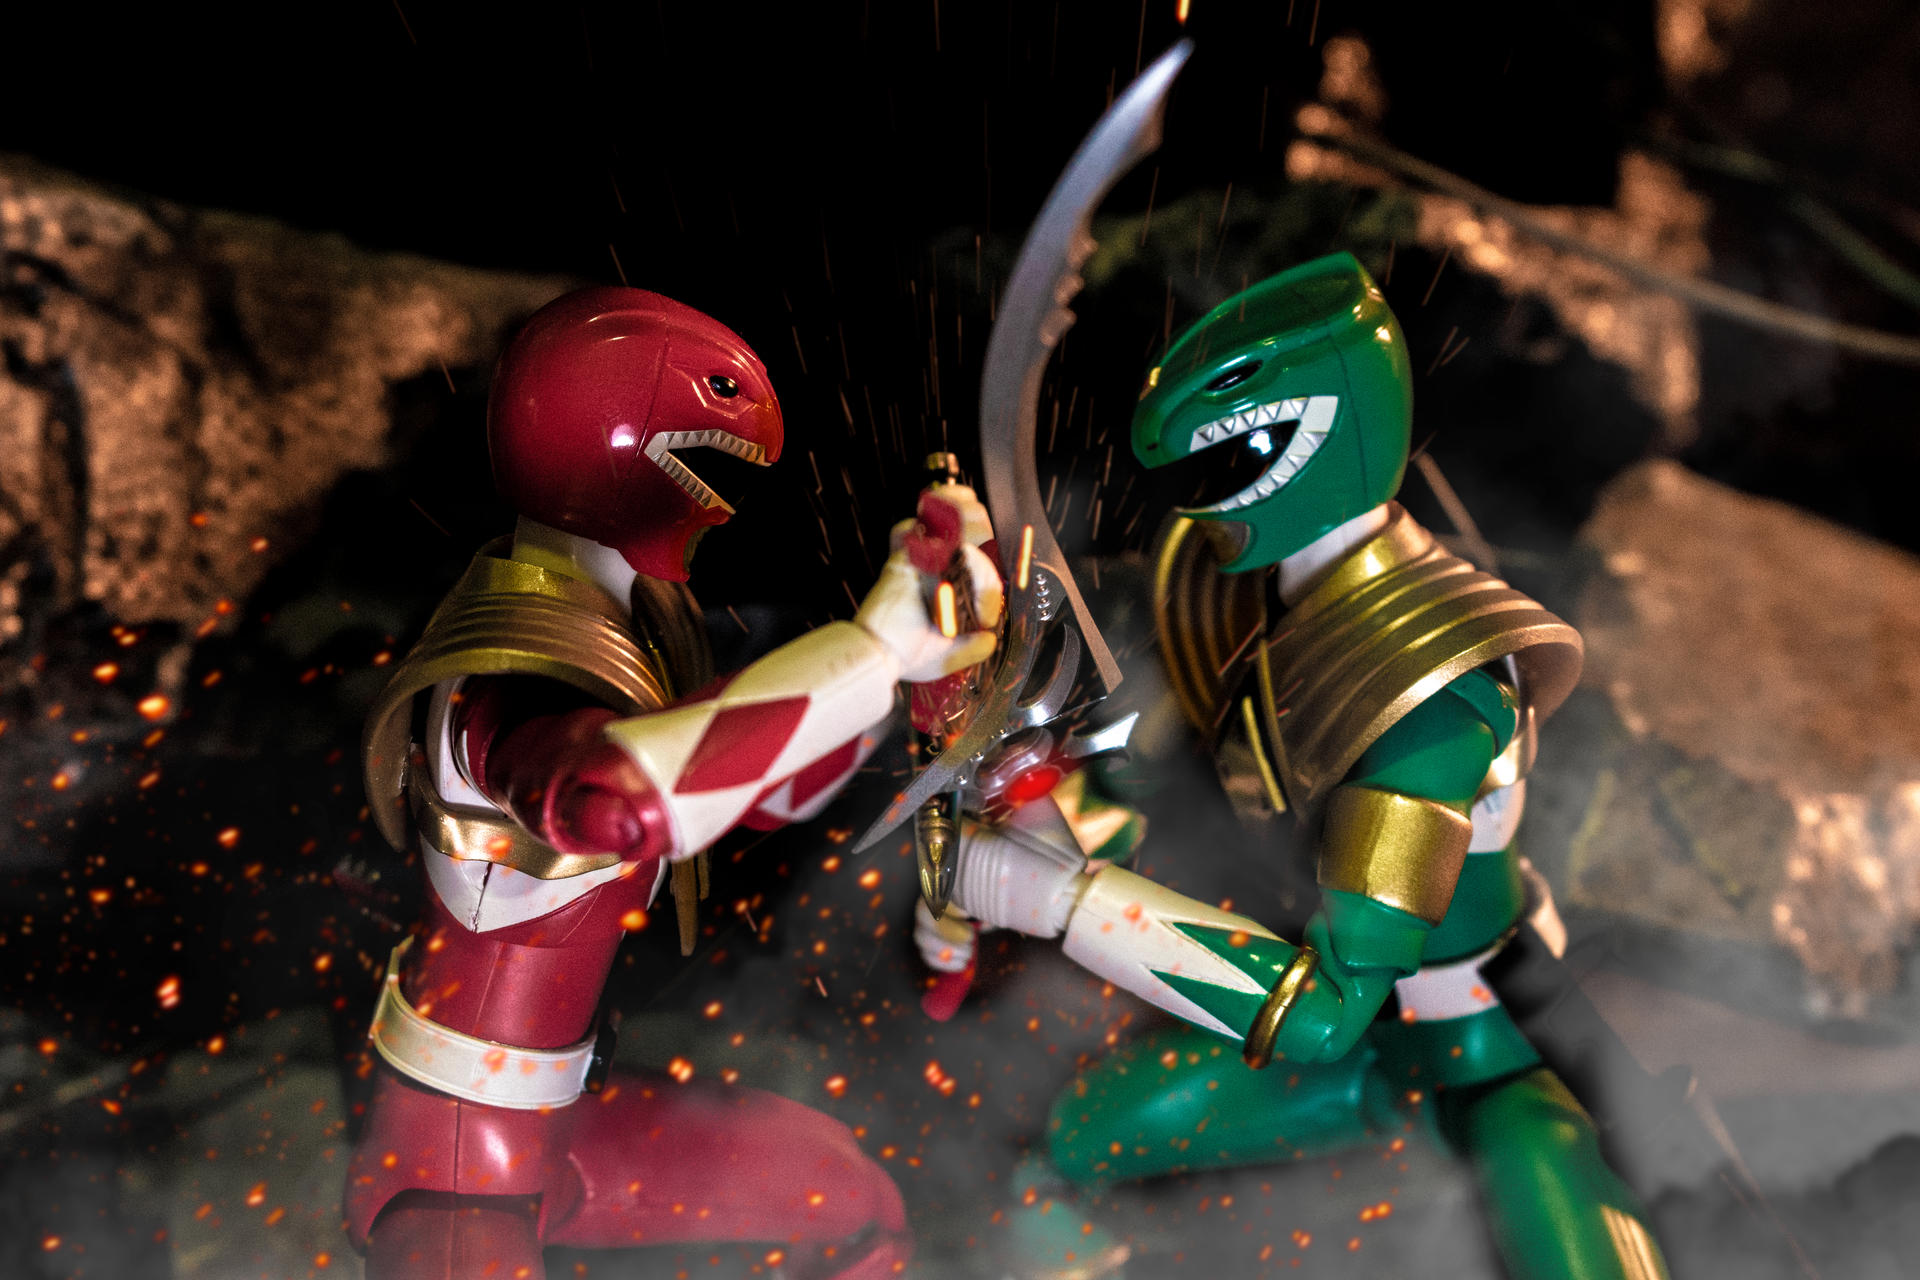 Red Ranger Vs Green Ranger By Mkblaze On Deviantart